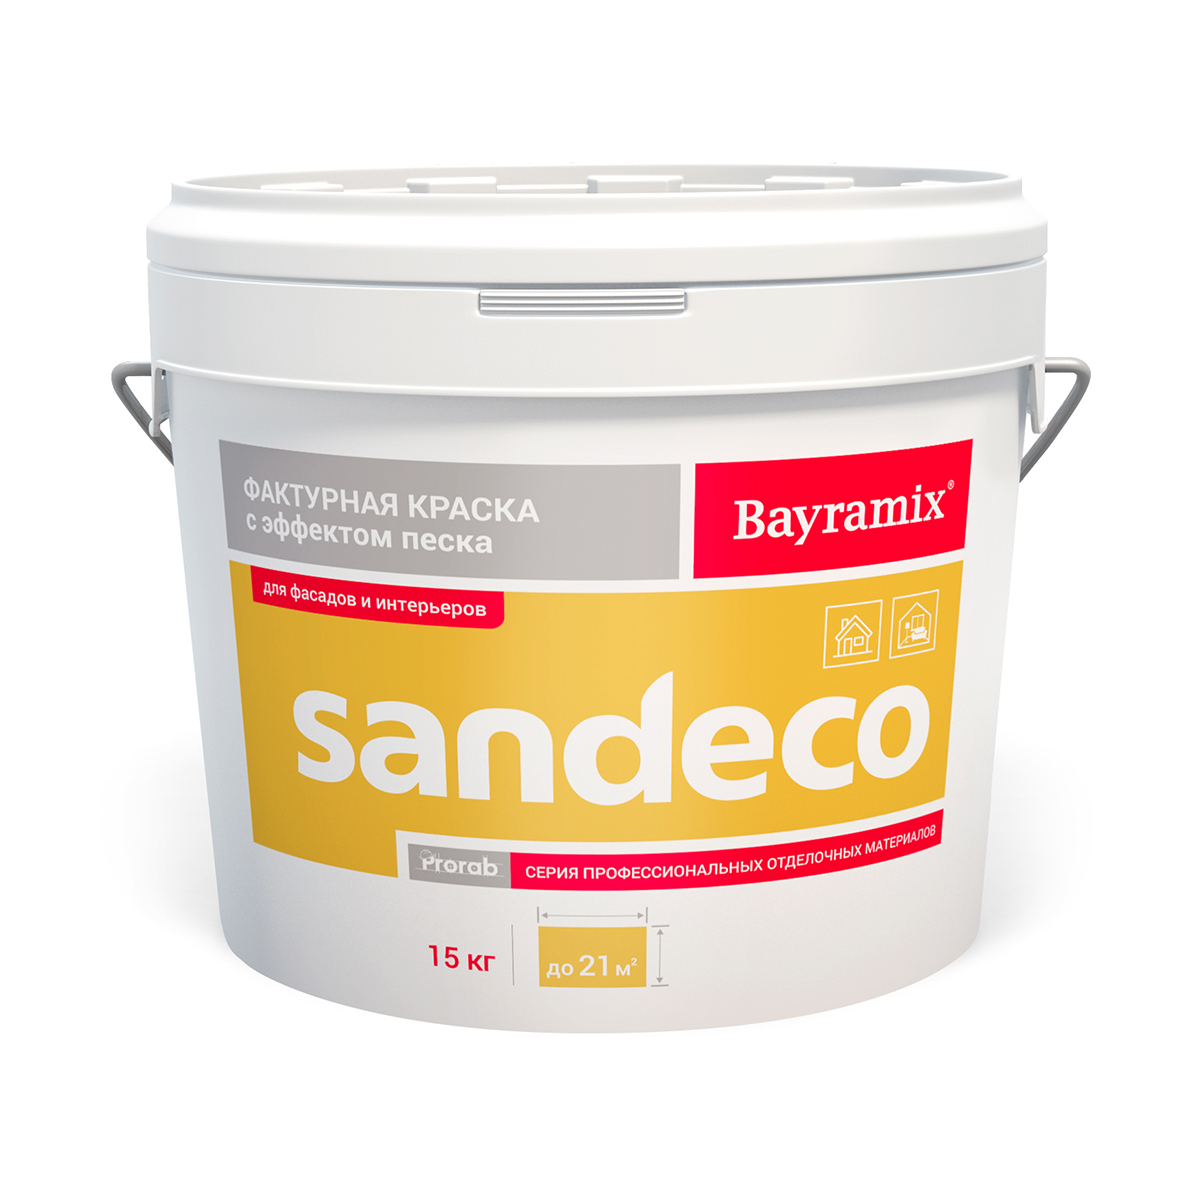 Краска фактурная "sandeco sd 001" 15 кг (1) "bayramix"